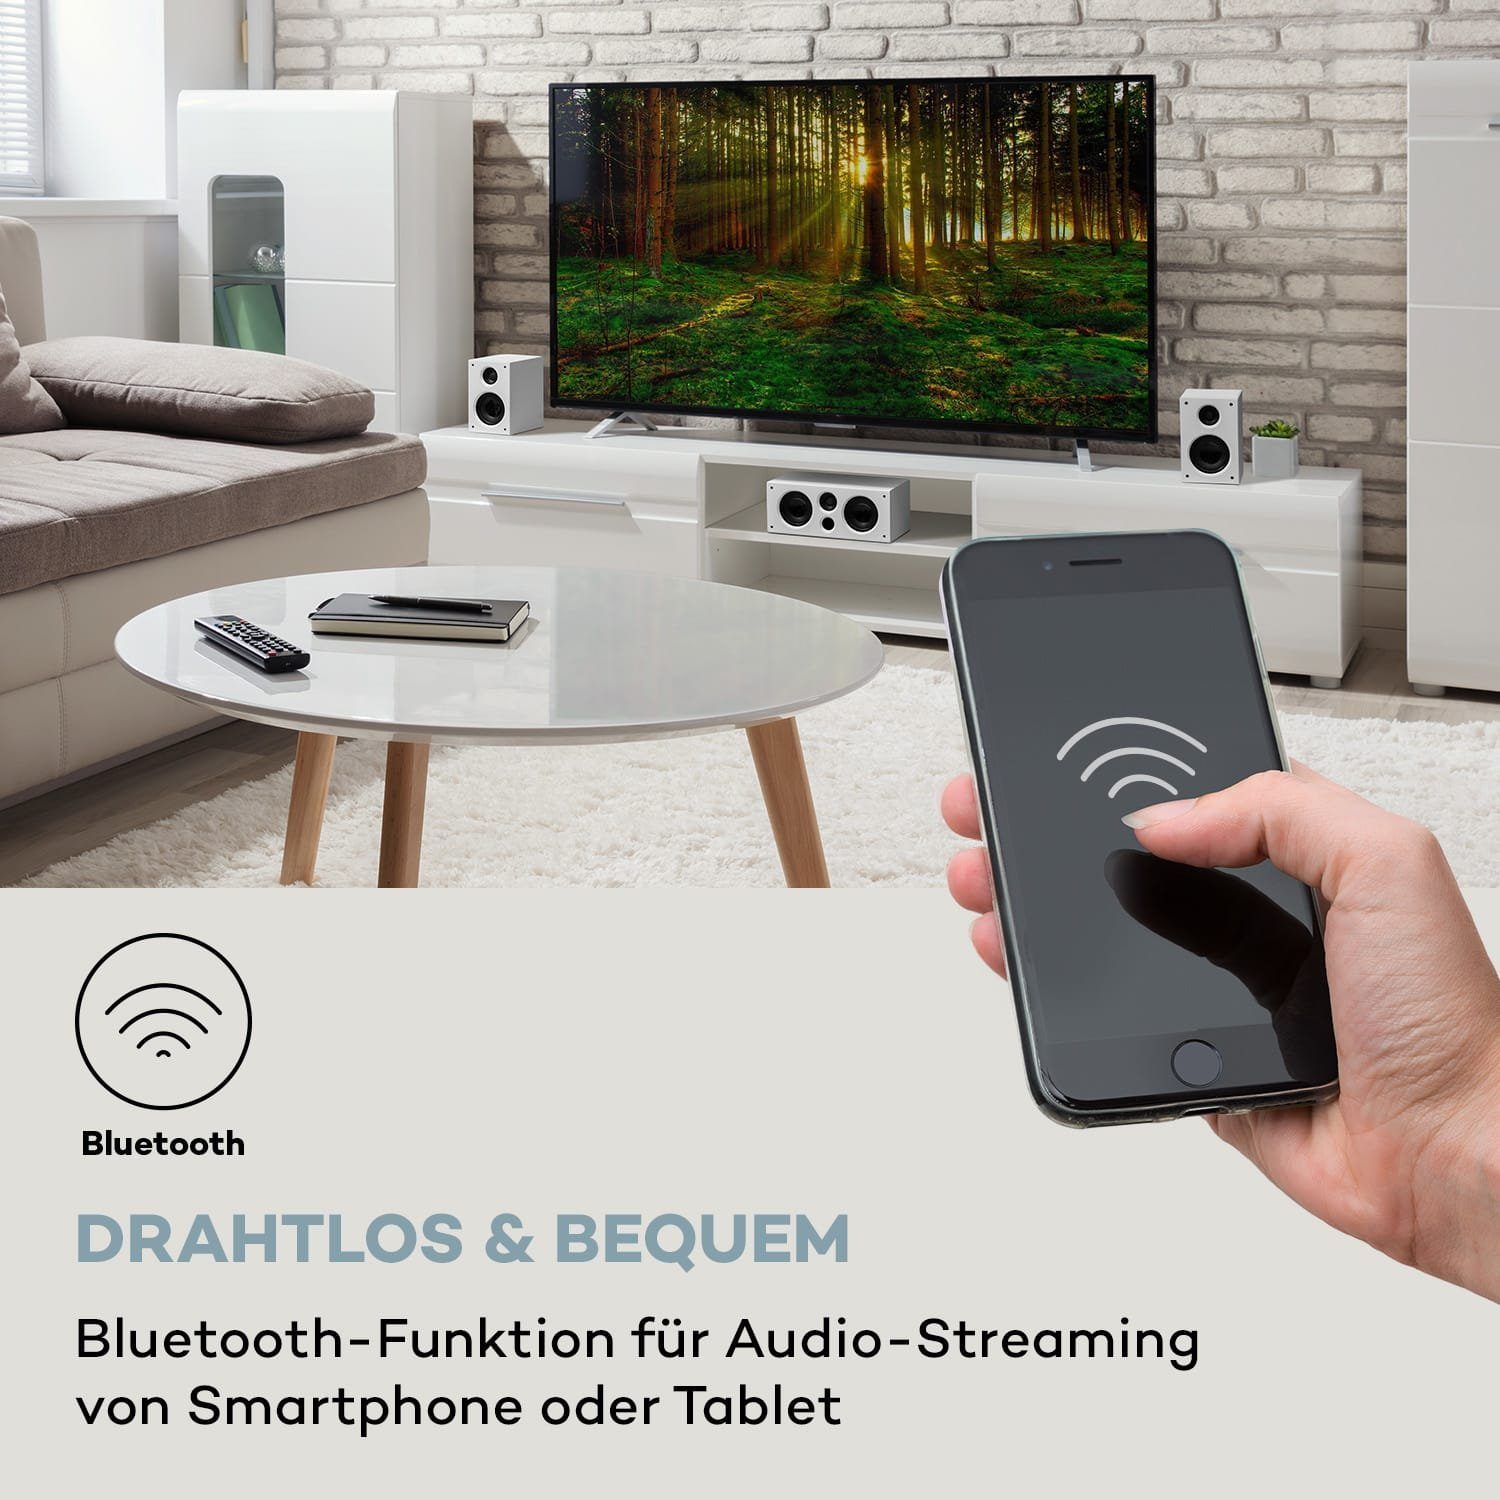 525 DG System Lautsprecher Areal 5.1 (Bluetooth) Weiß Auna 5.1-Surround-System